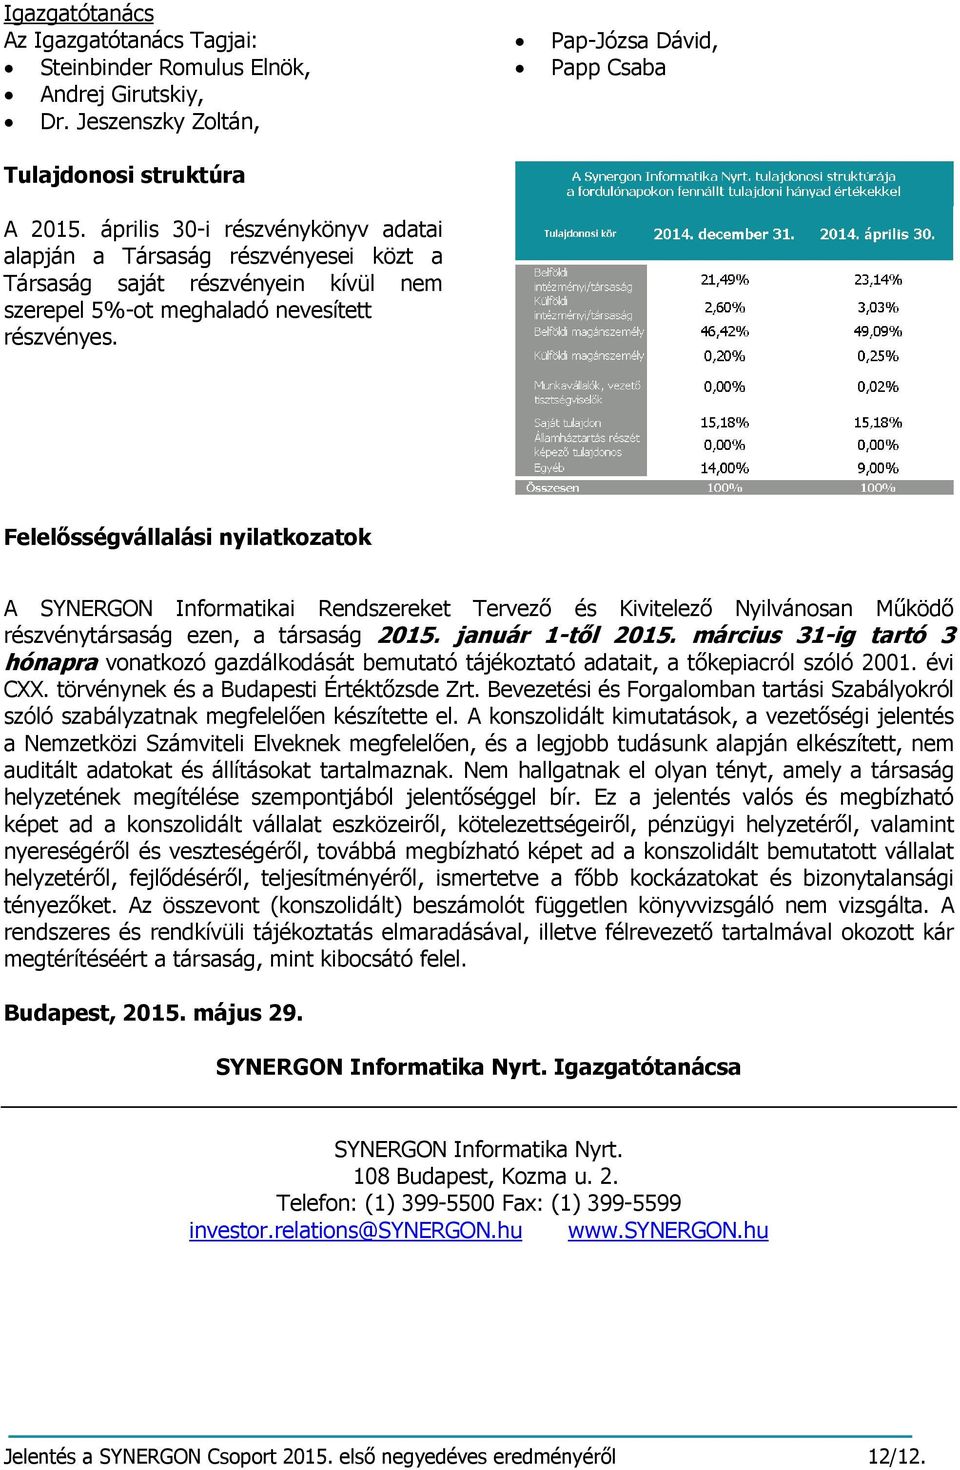 Pap-Józsa Dávid, Papp Csaba Felelősségvállalási nyilatkozatok A SYNERGON Informatikai Rendszereket Tervező és Kivitelező Nyilvánosan Működő részvénytársaság ezen, a társaság 2015. január 1-től 2015.